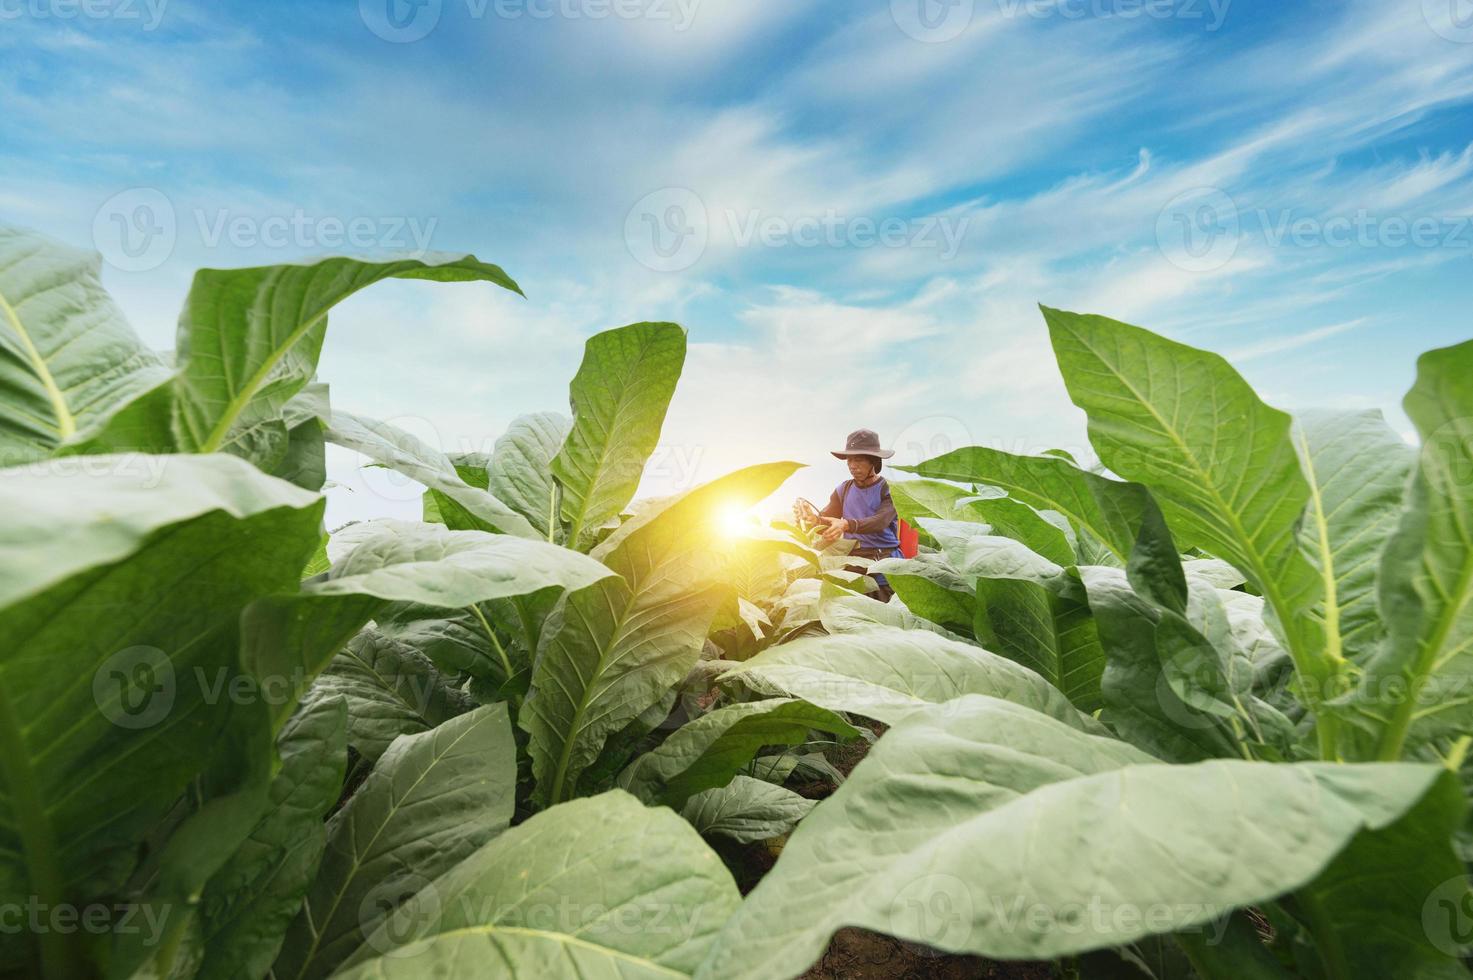 Landwirte verwenden landwirtschaftliche Geräte und Werkzeuge. Mischen Sie Erhaltungstränke, erhöhen Sie den Tabakertrag und wählen Sie neue Anbaumethoden. Junglandwirte und Tabakanbau foto